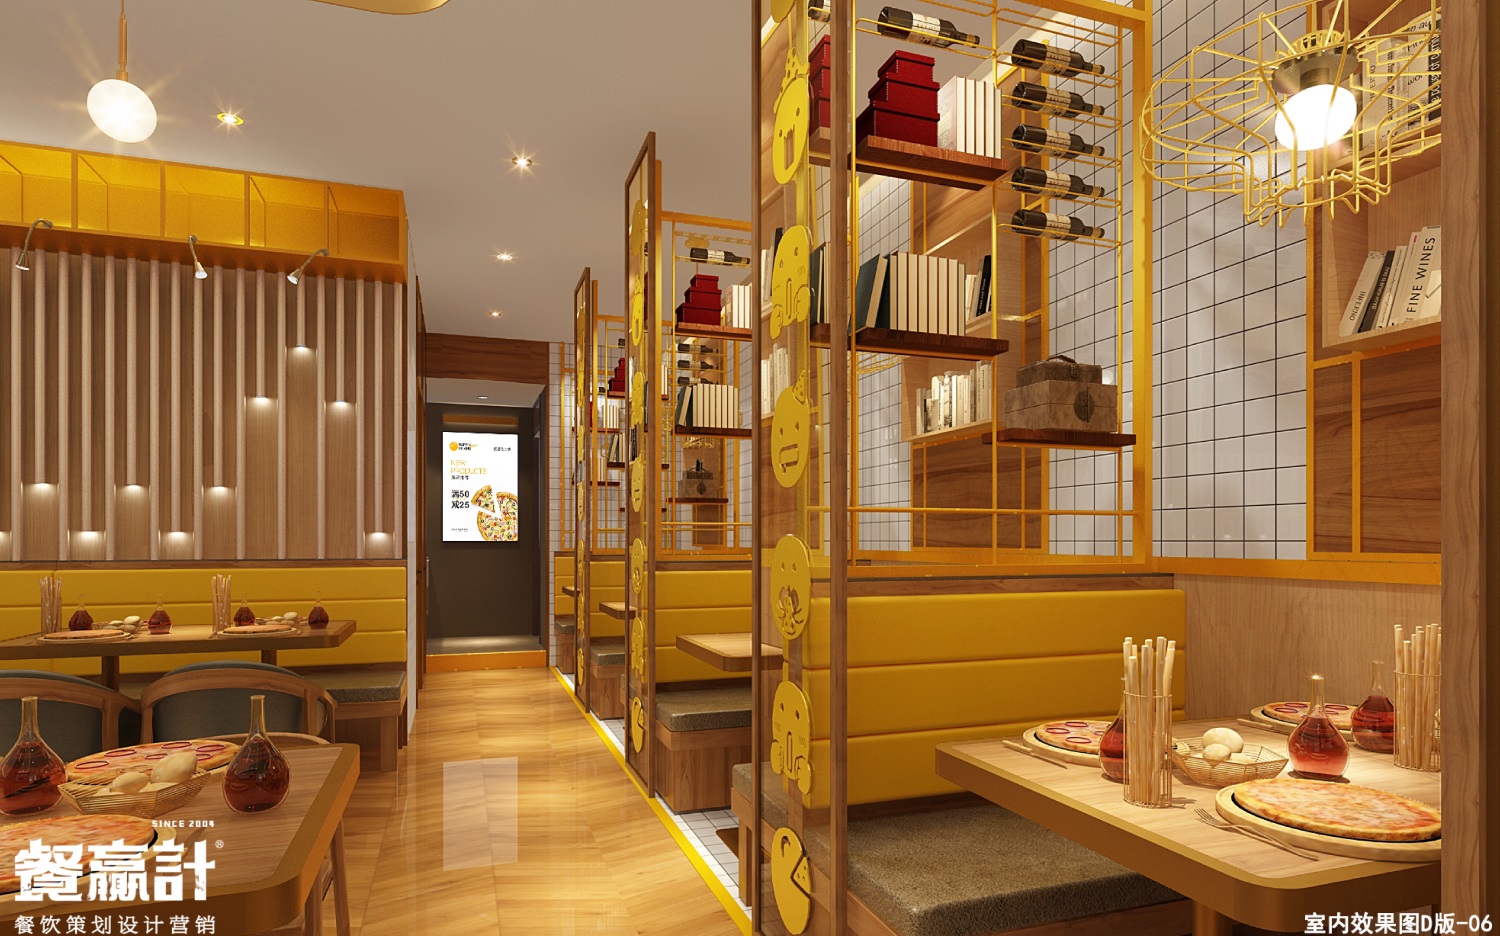 广东餐饮连锁品牌巴芬岛西餐厅SI空间设计